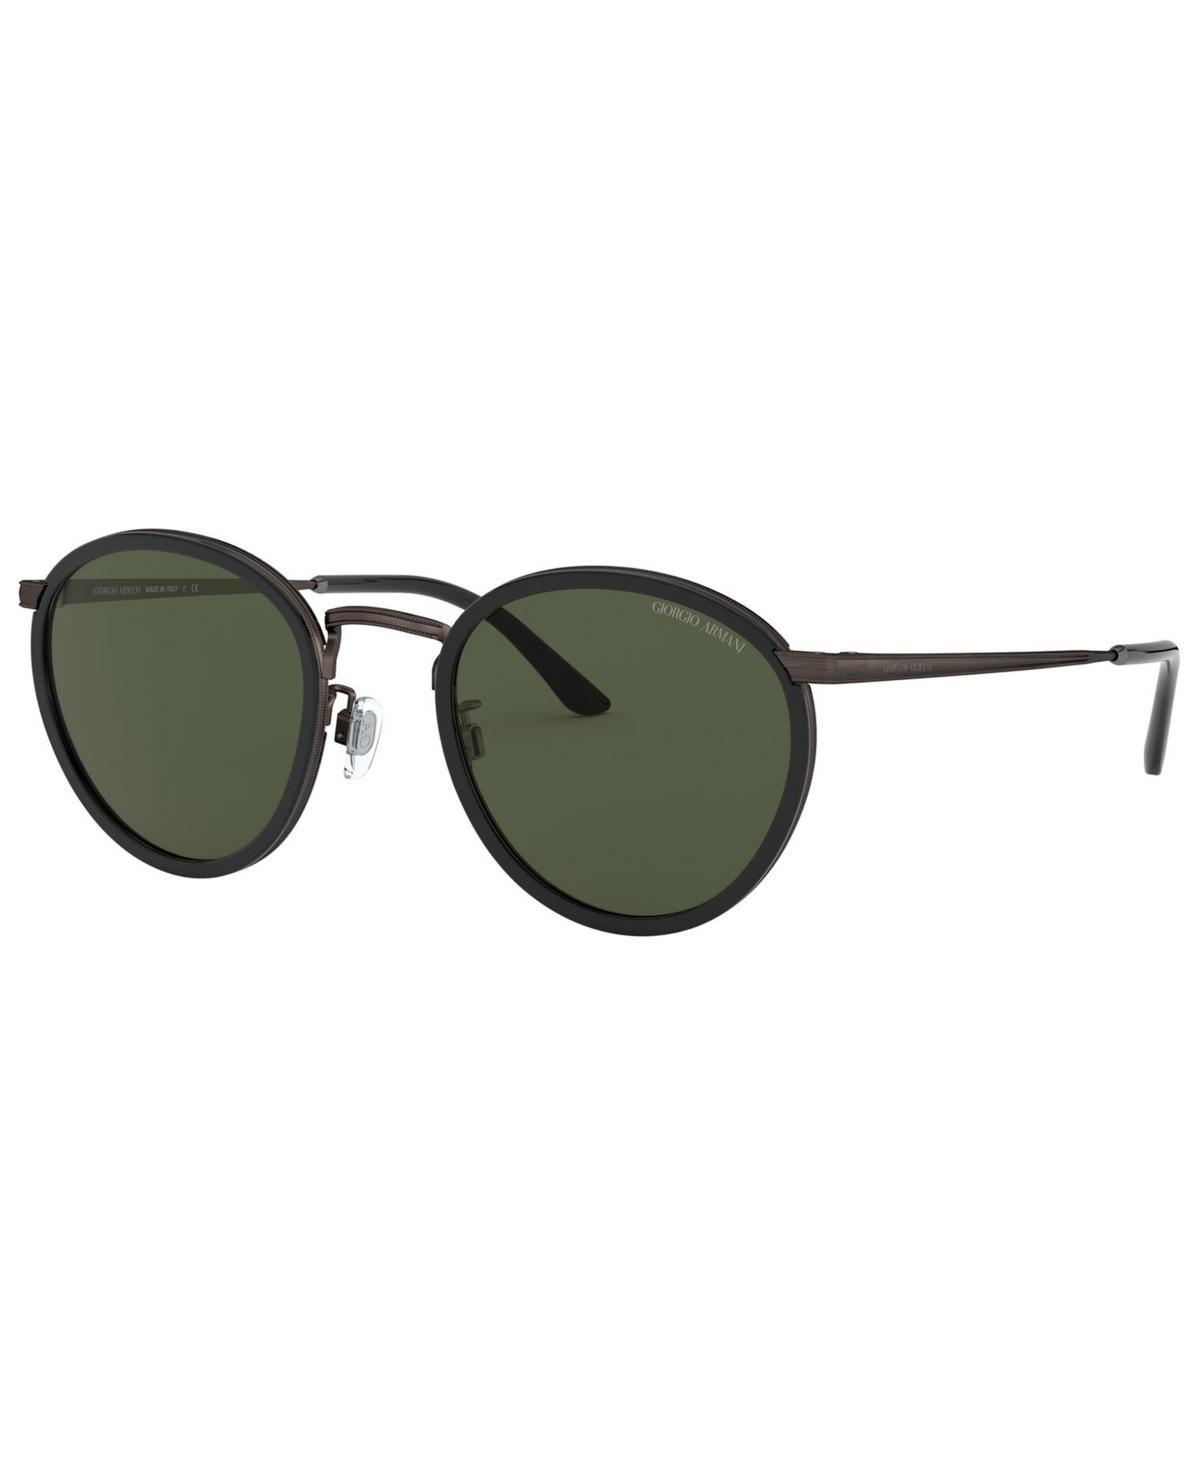 Giorgio Armani Mens Sunglasses, Ar 101M Product Image